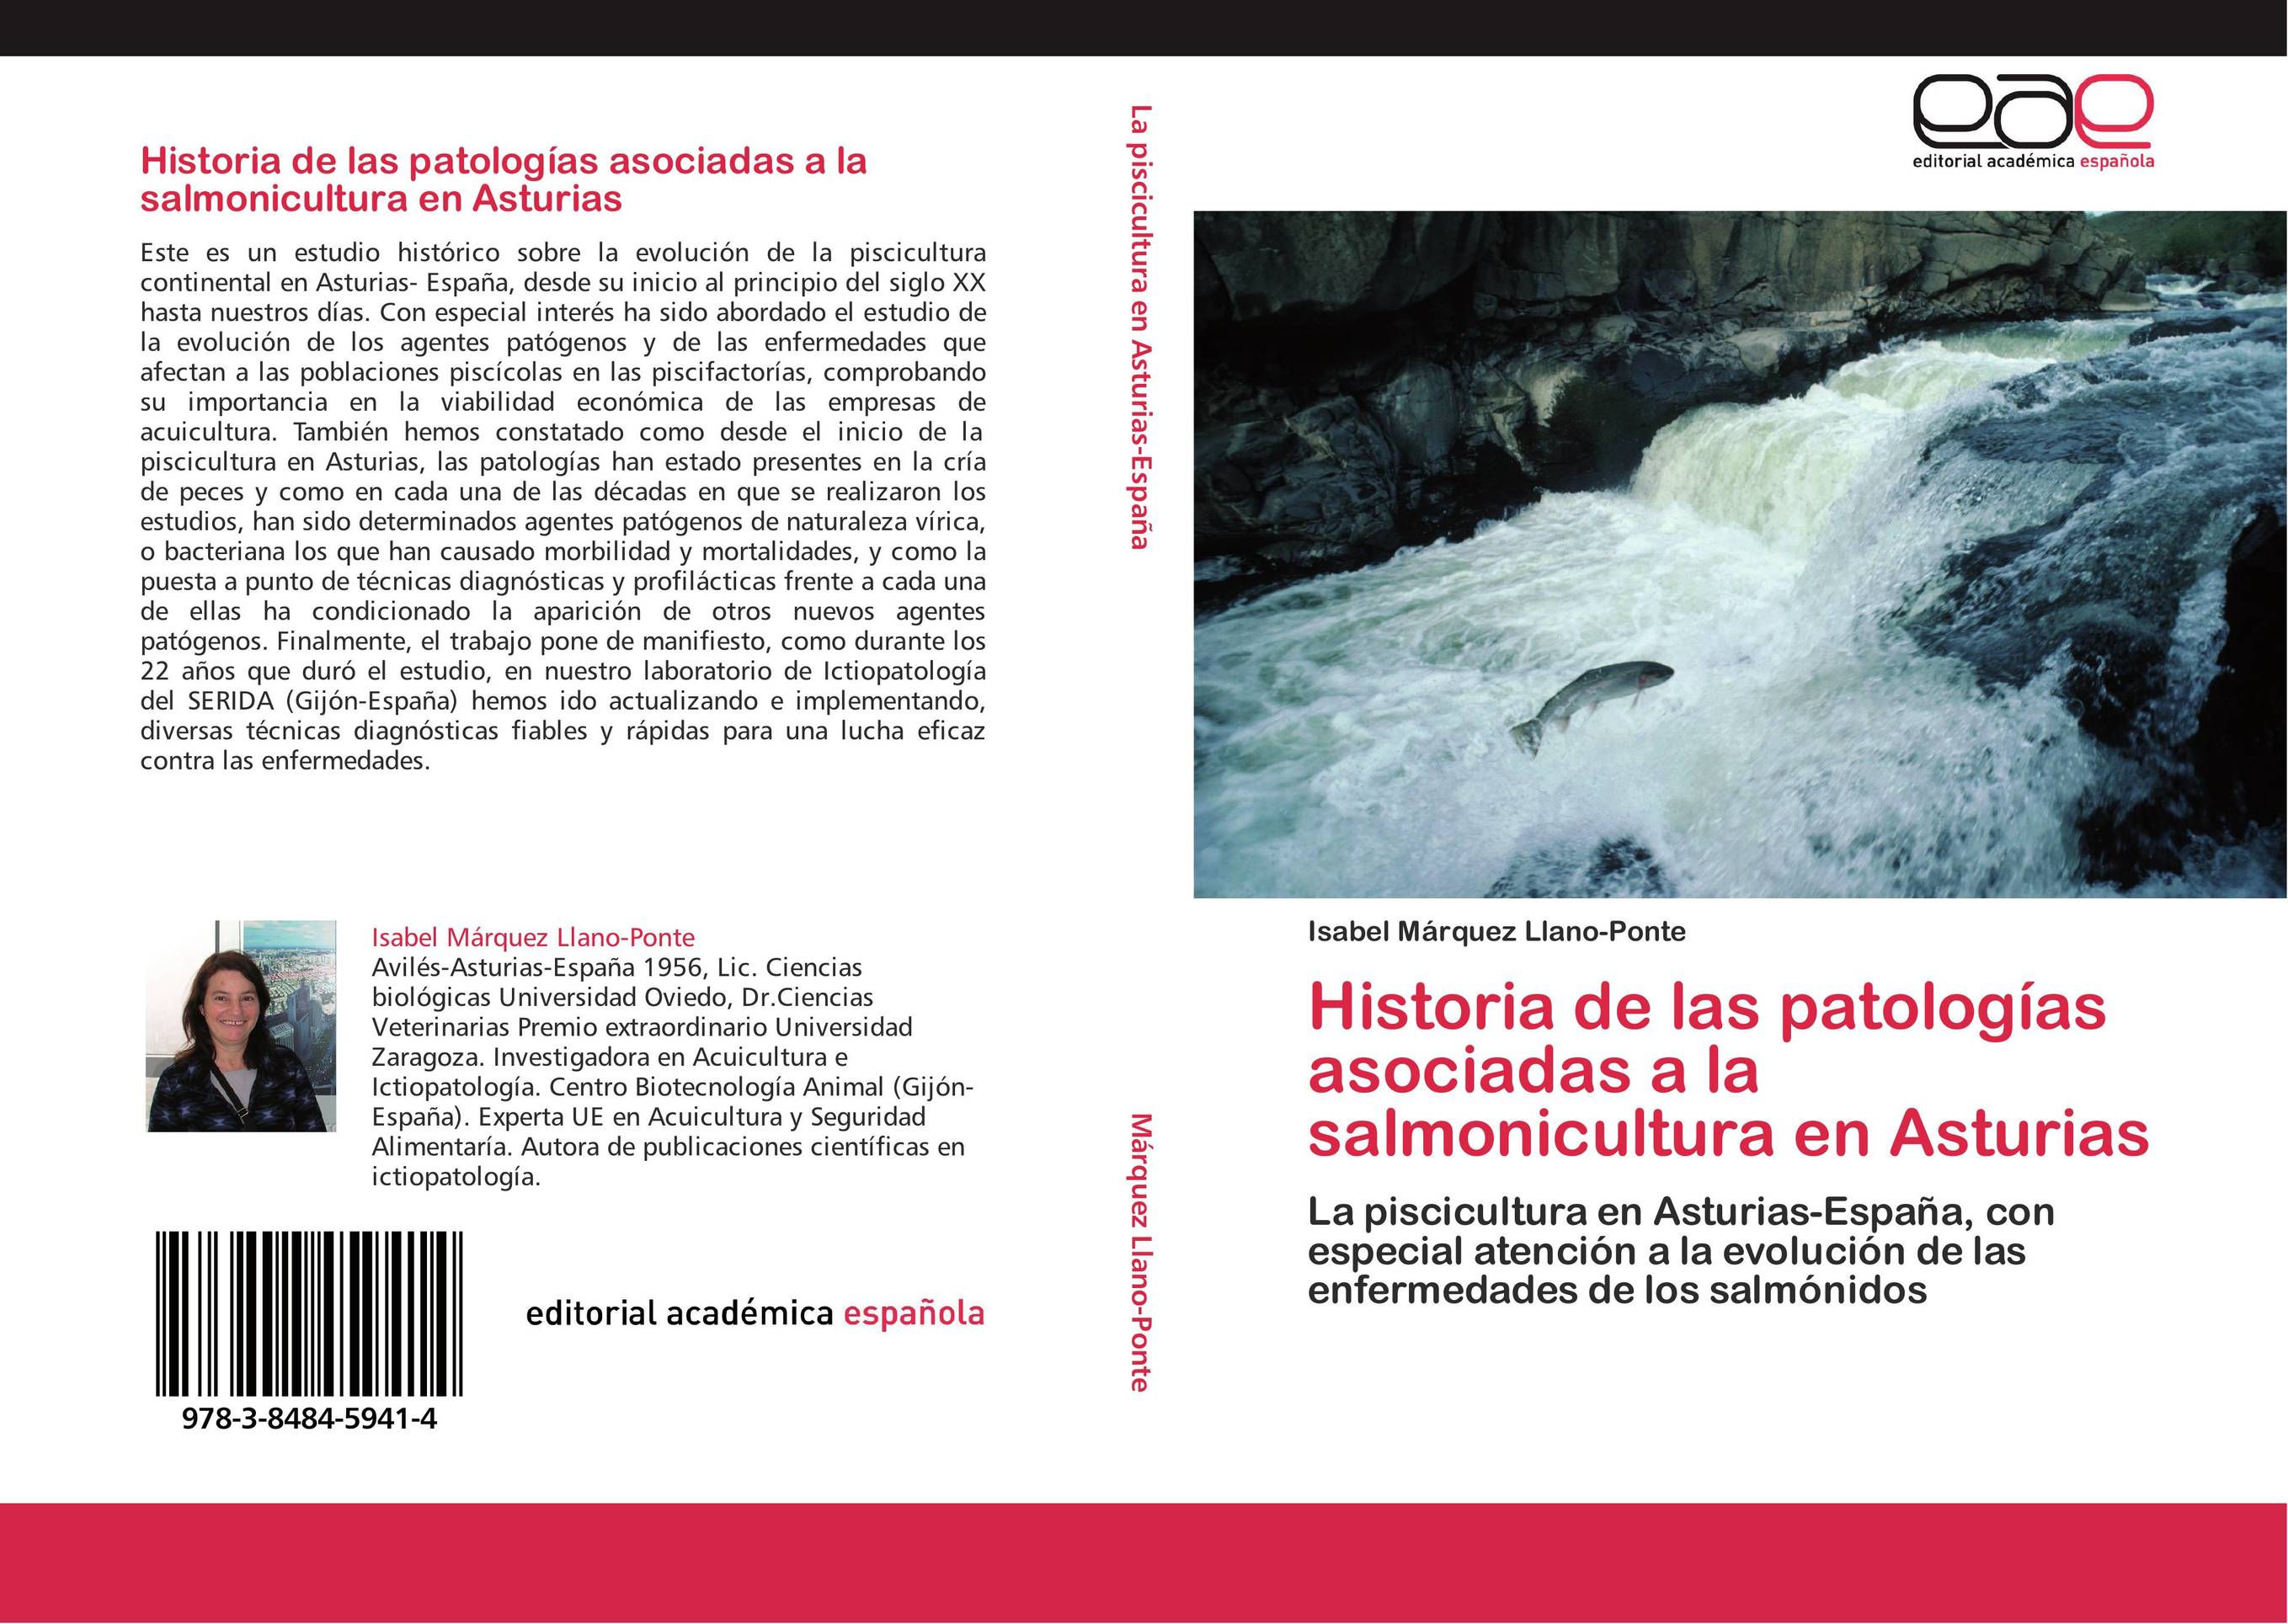 Historia de las patologías asociadas a la salmonicultura en Asturias